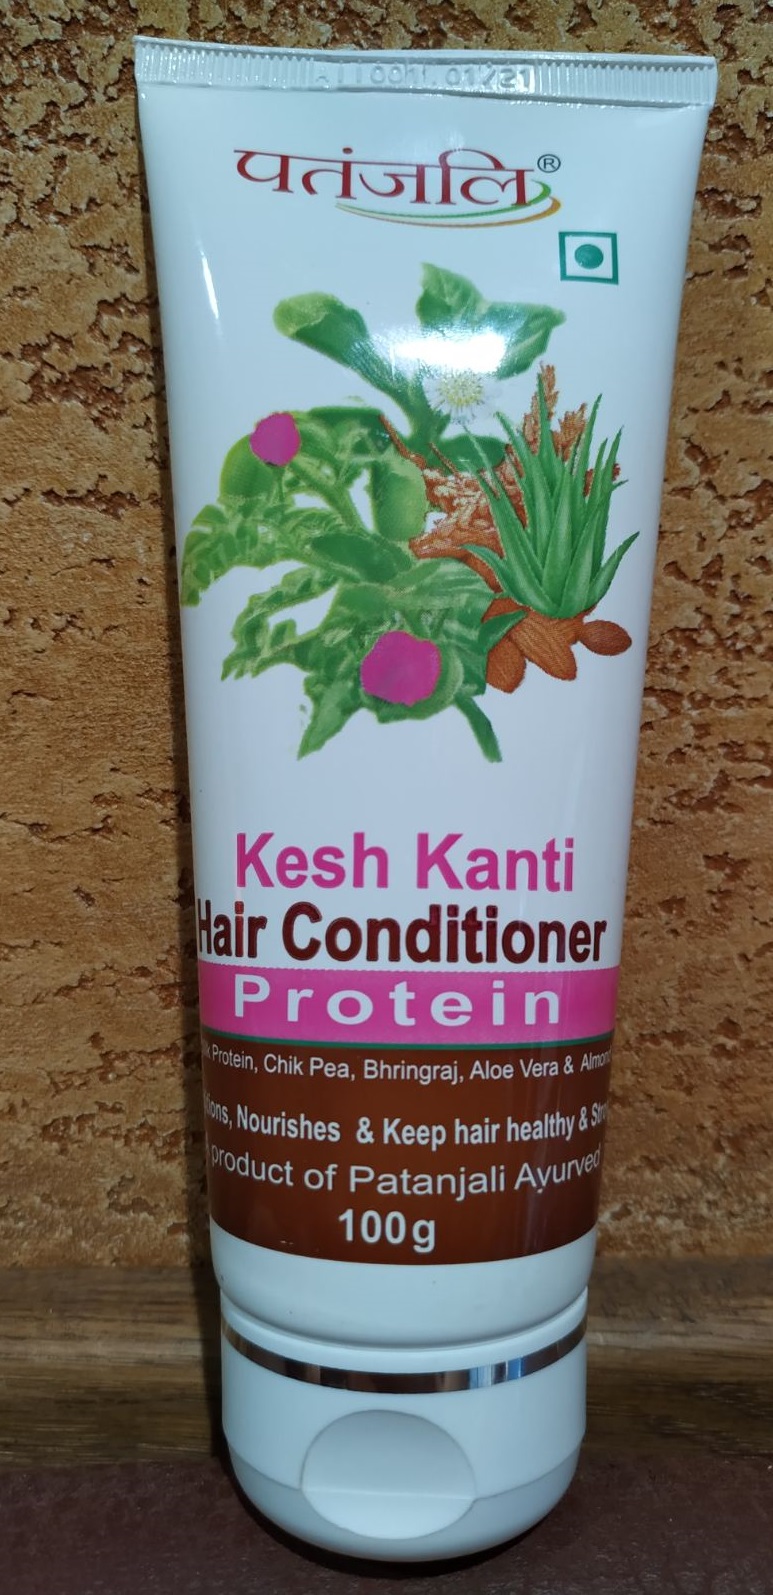 Кондиционер Патанджали для сухих и поврежденных волос Протеин 100 гр Patanjali hair conditioner Protein Kesh kanti Индия